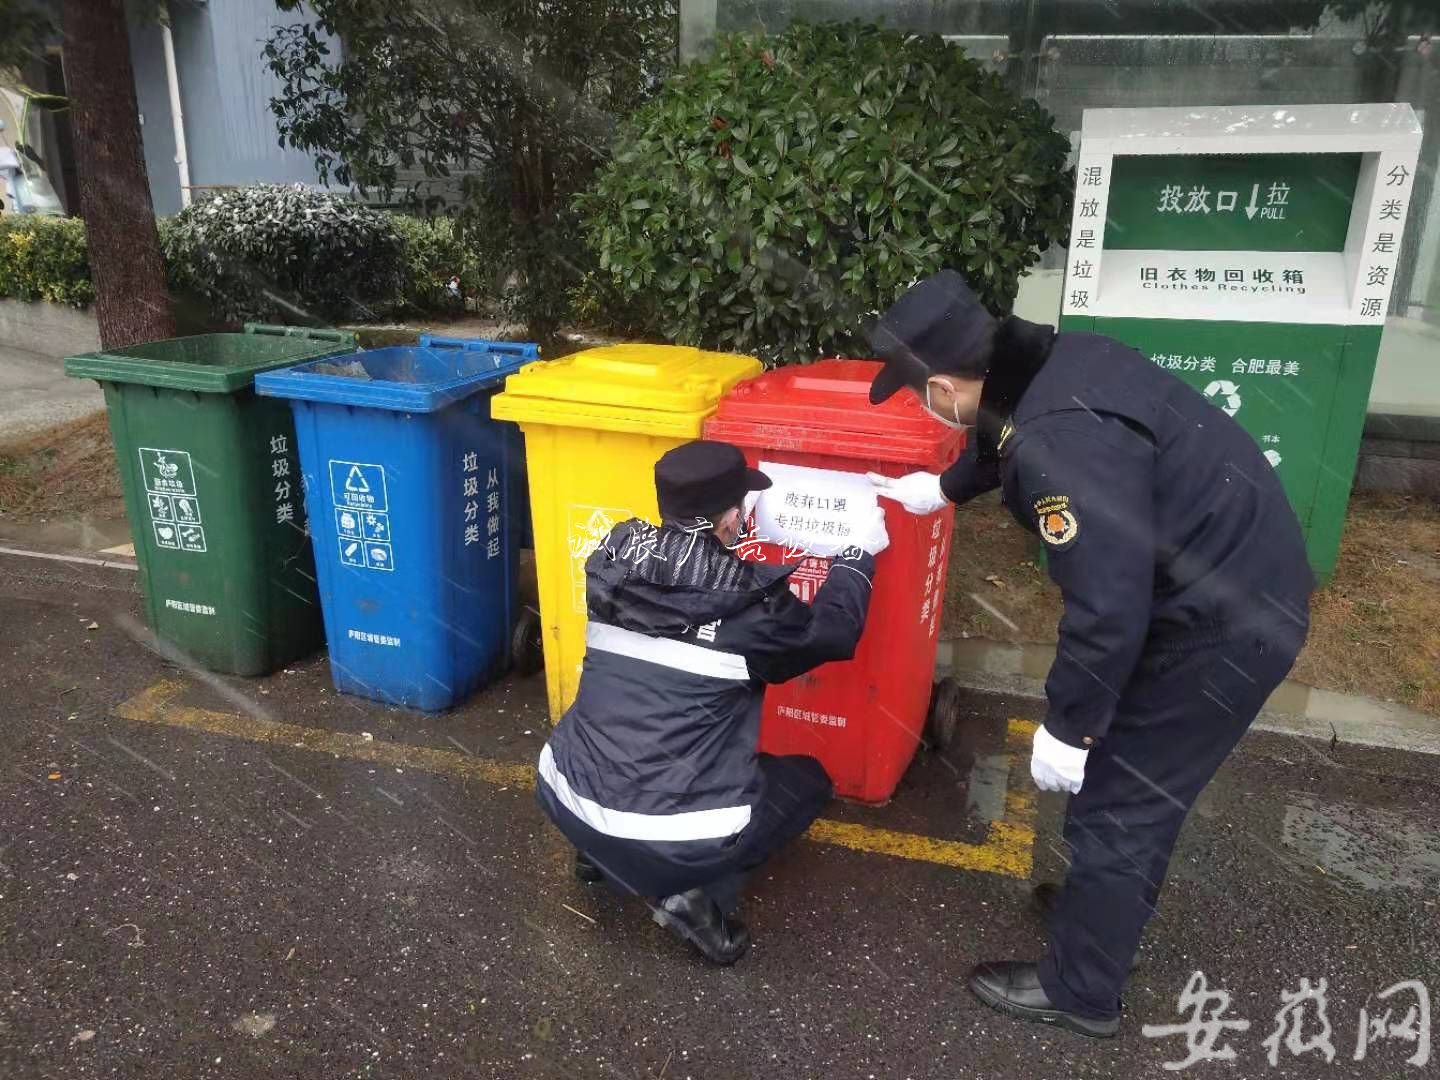 合肥亳州路街道设文化宣传栏置固定垃圾桶收集口罩